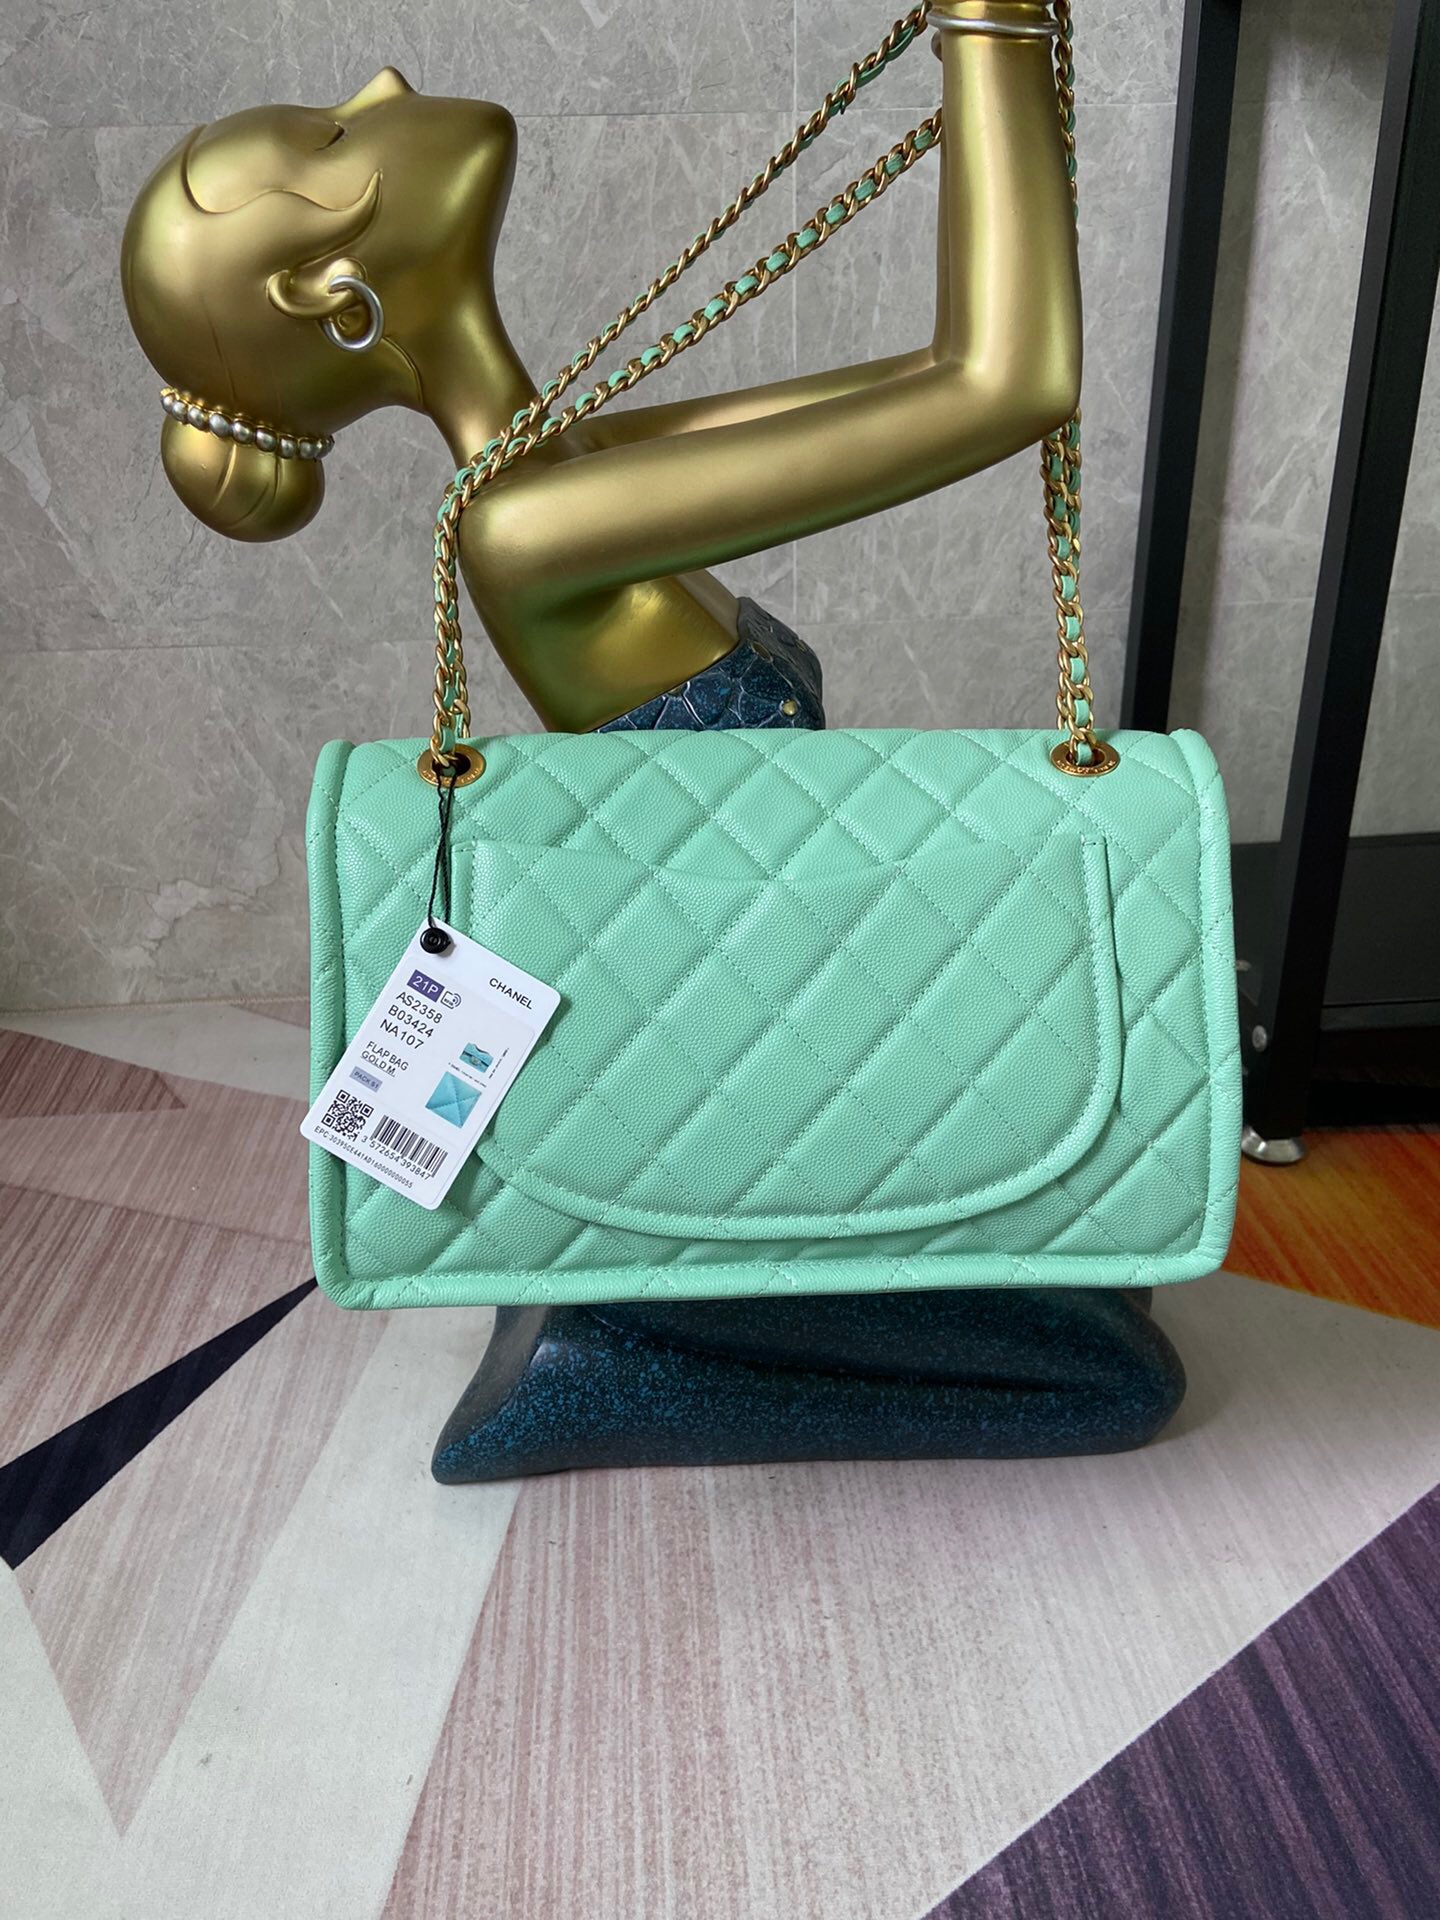 Chanel flap bag Grained Calfskin AS2358 light green